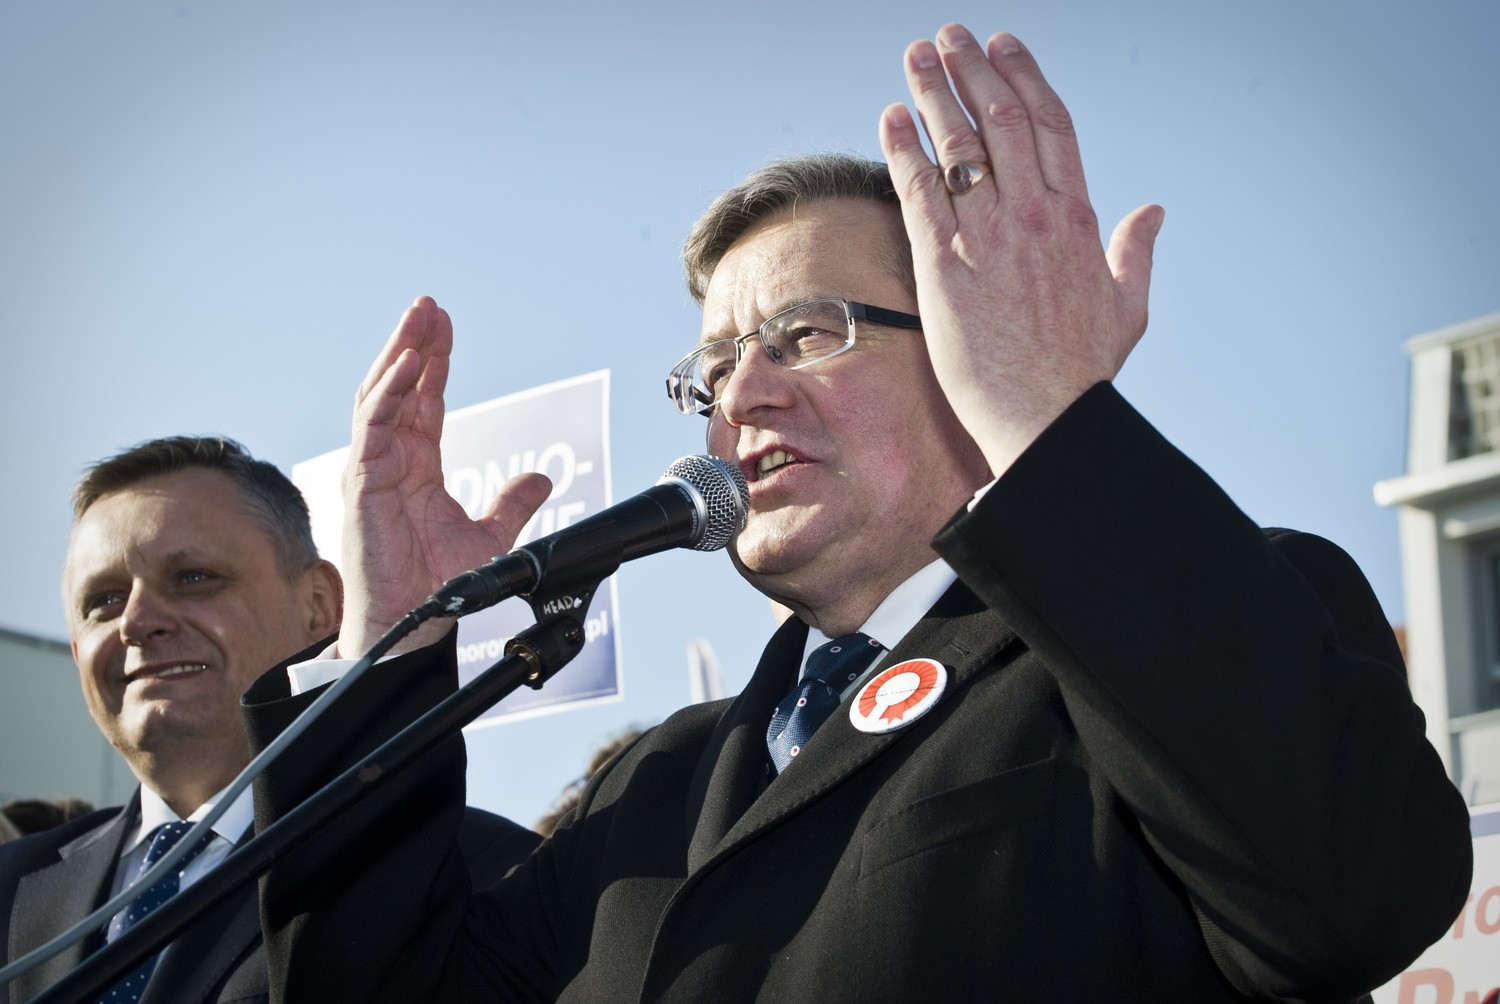 Bronisław Komorowski urządził sobie przy okazji wizyty w Koszalinie kampanię wyborczą. Nie dość, że pracowali przy niej urzędnicy, to jeszcze dostali za to nagrody z ratusza.